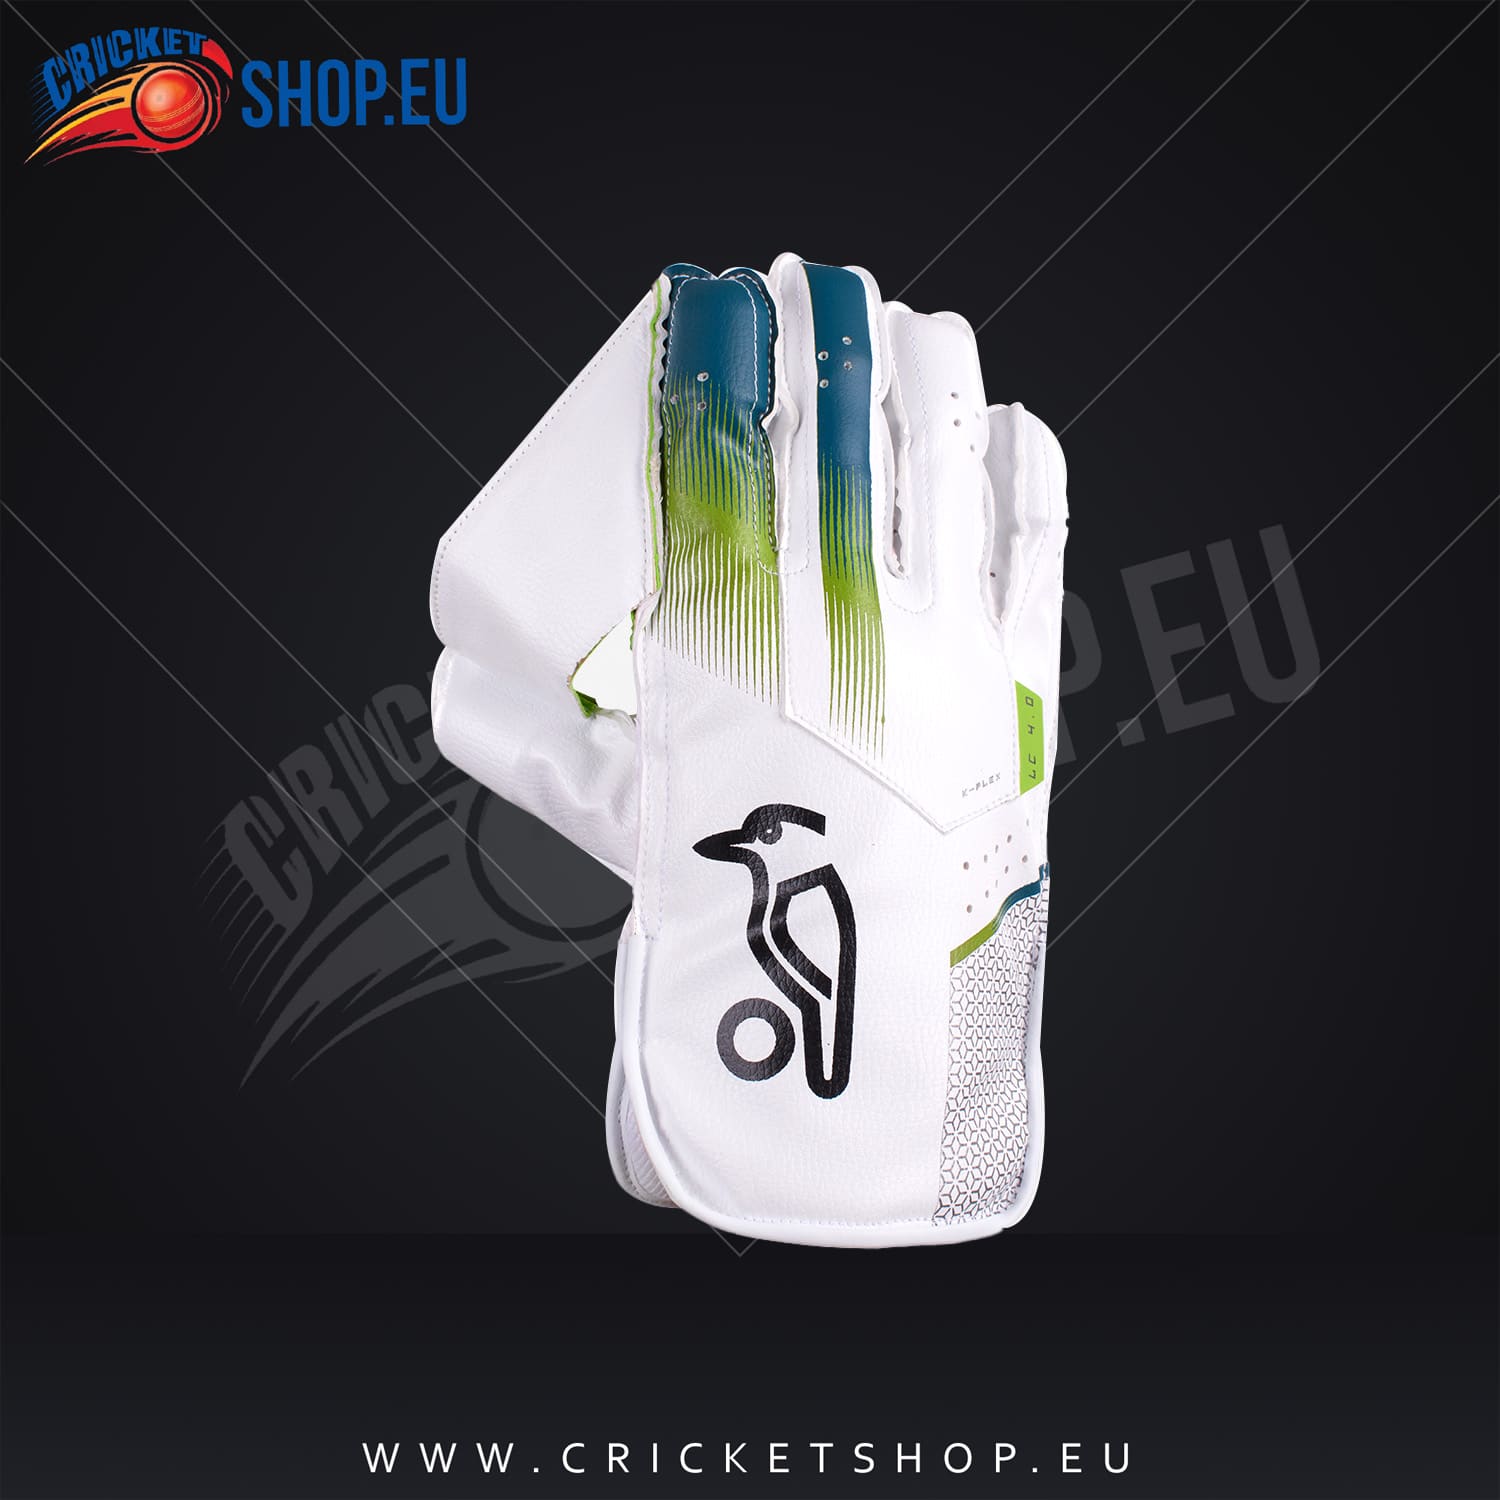 Kookaburra LC 4.0 Wicket Keeping Gloves